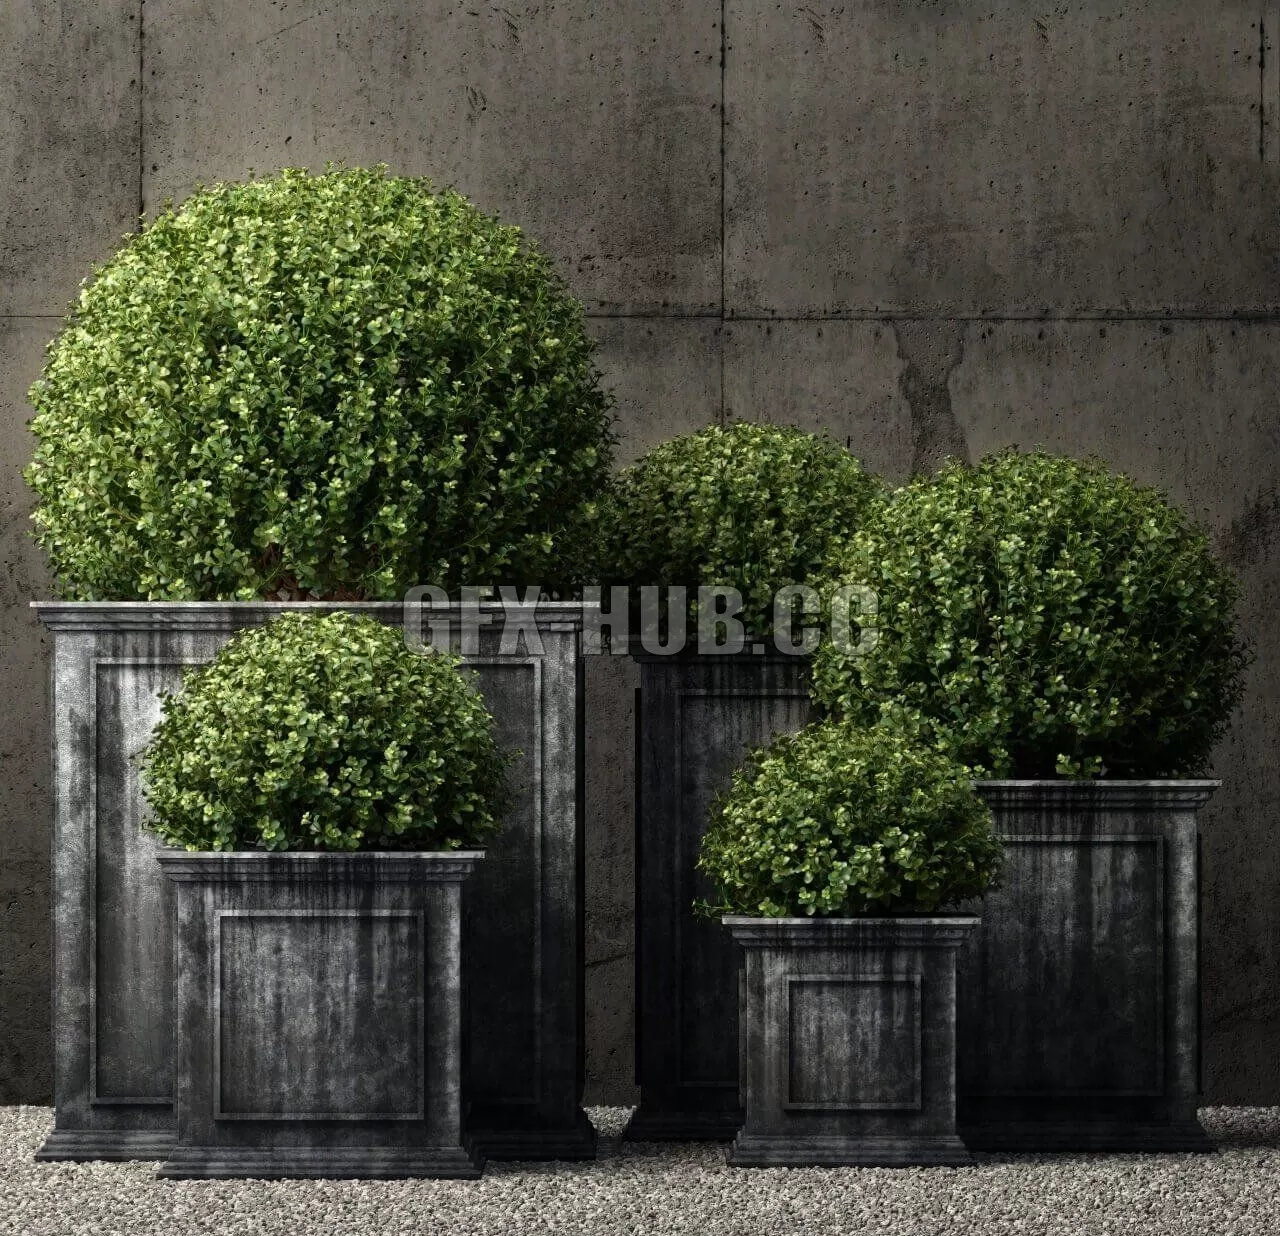 PLANT – Restoration Hardware estate zinc framed panel planters